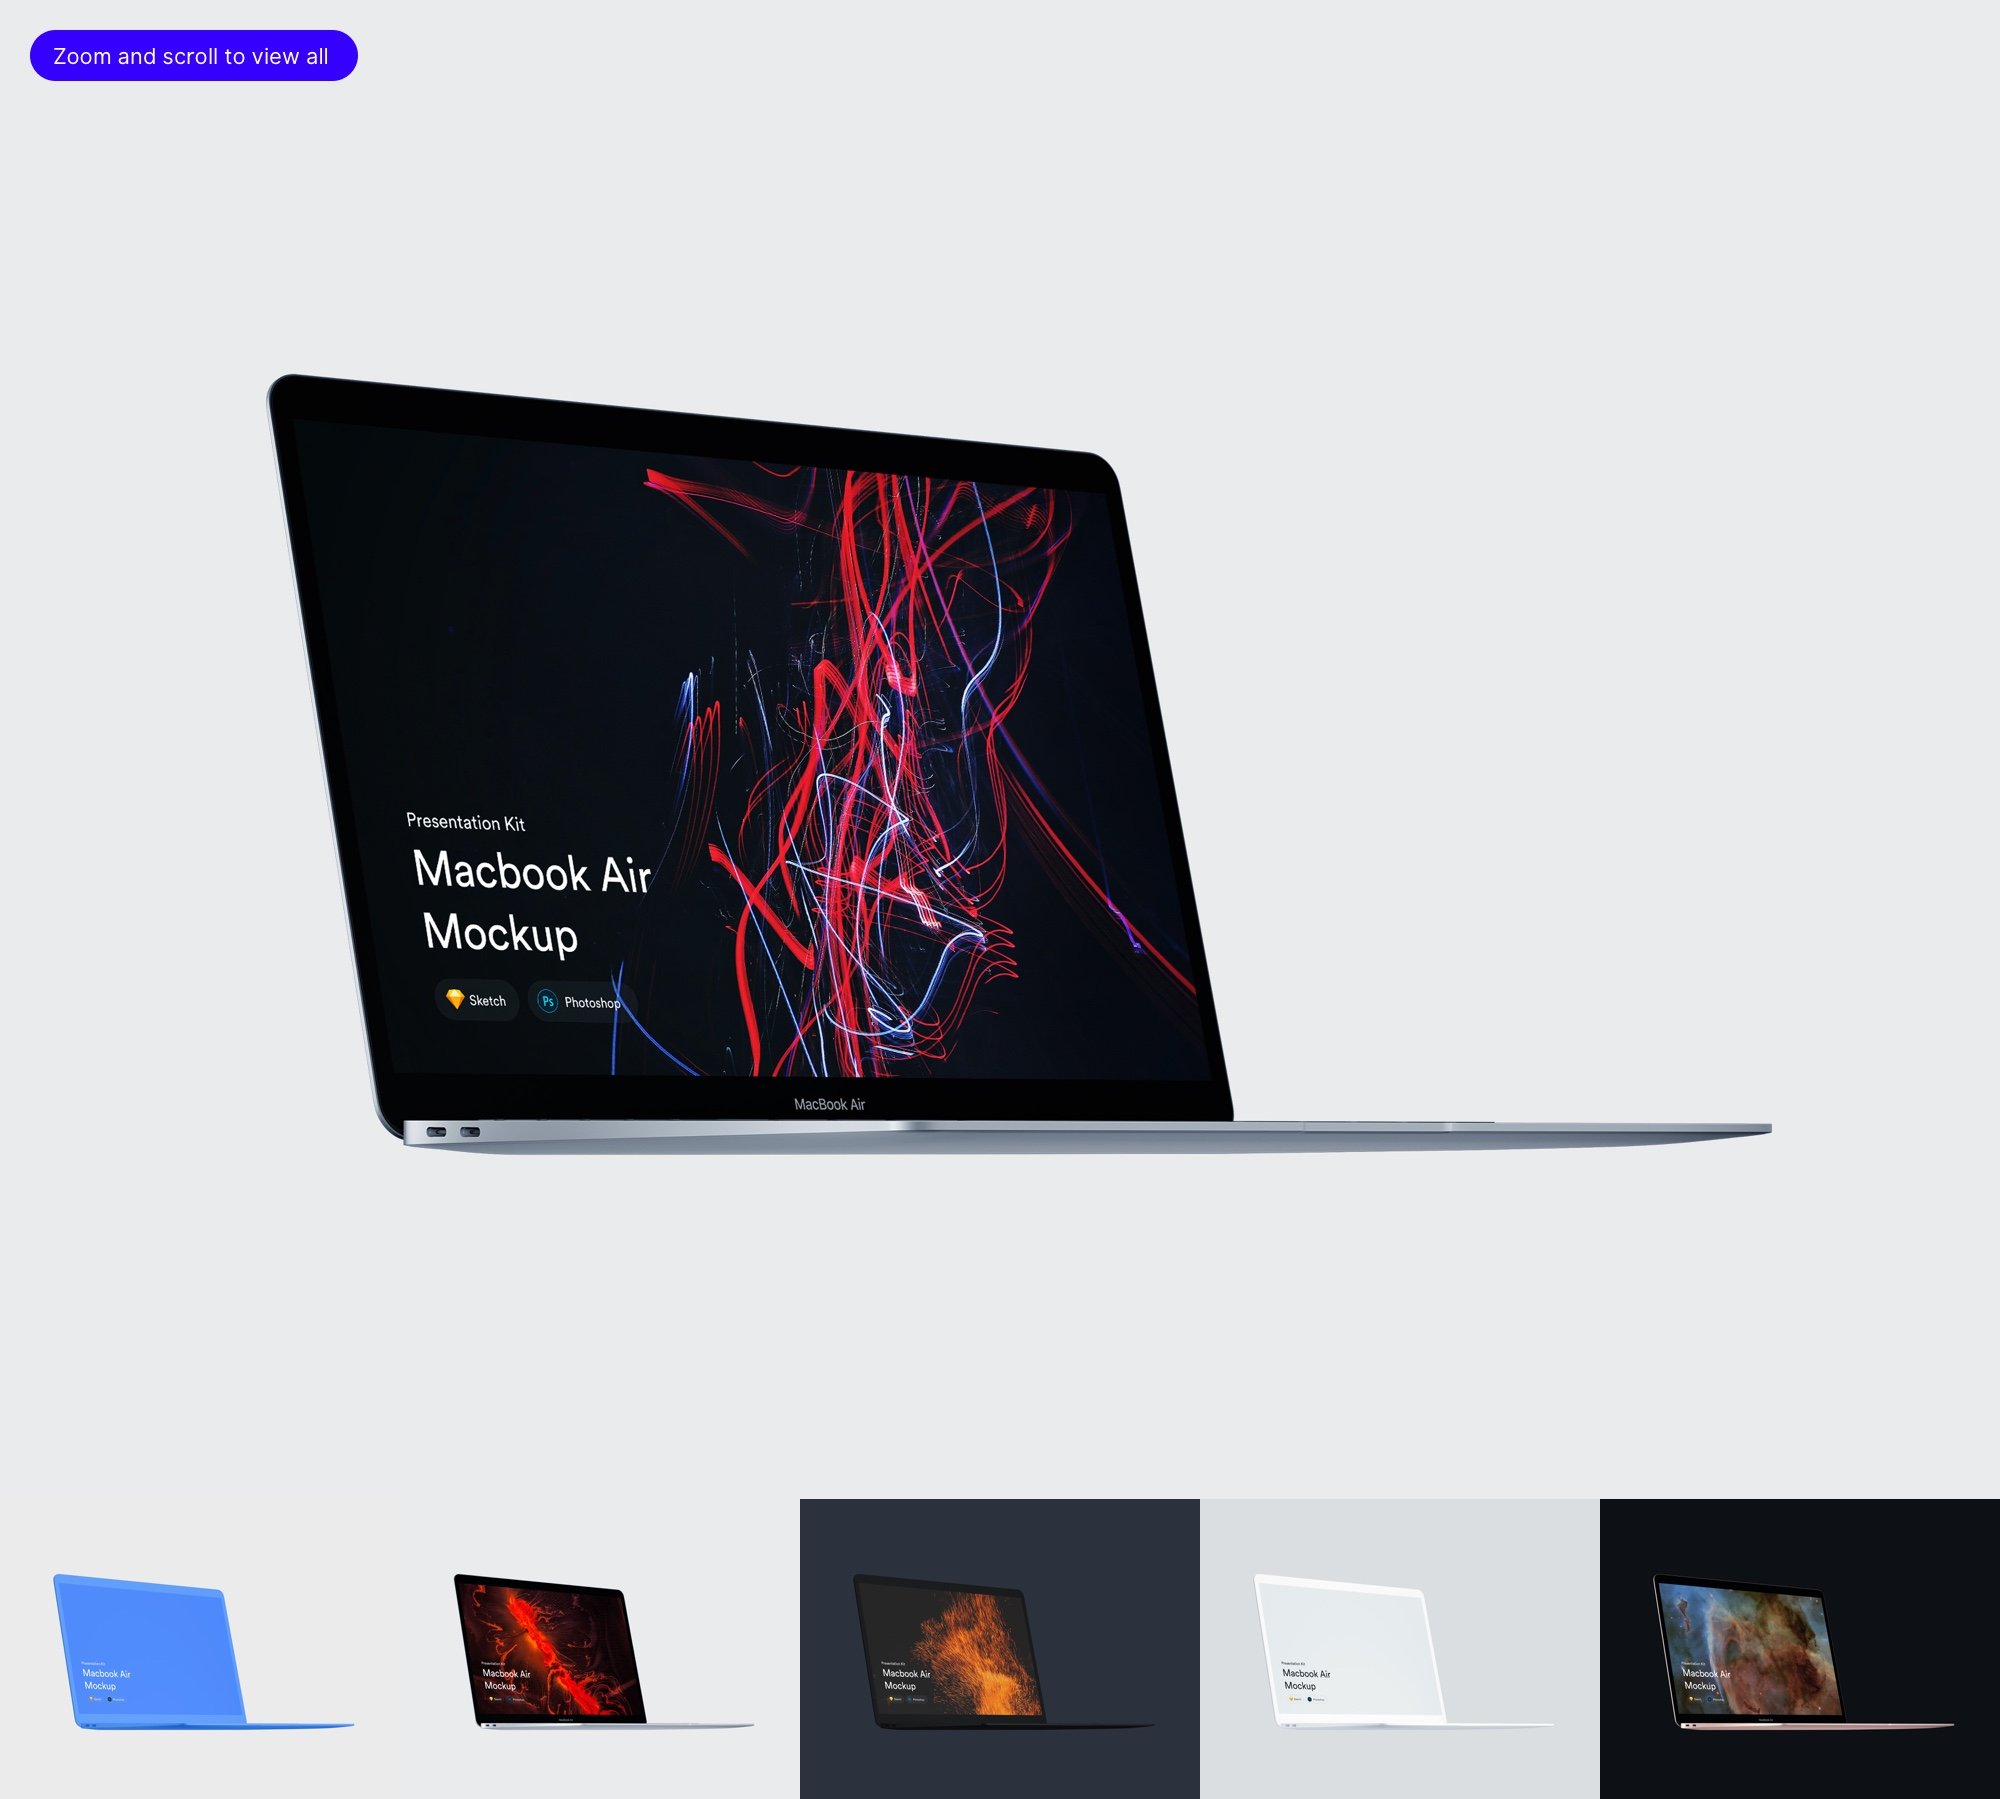 MacBook Air Mockups (2018) | PK preview image.